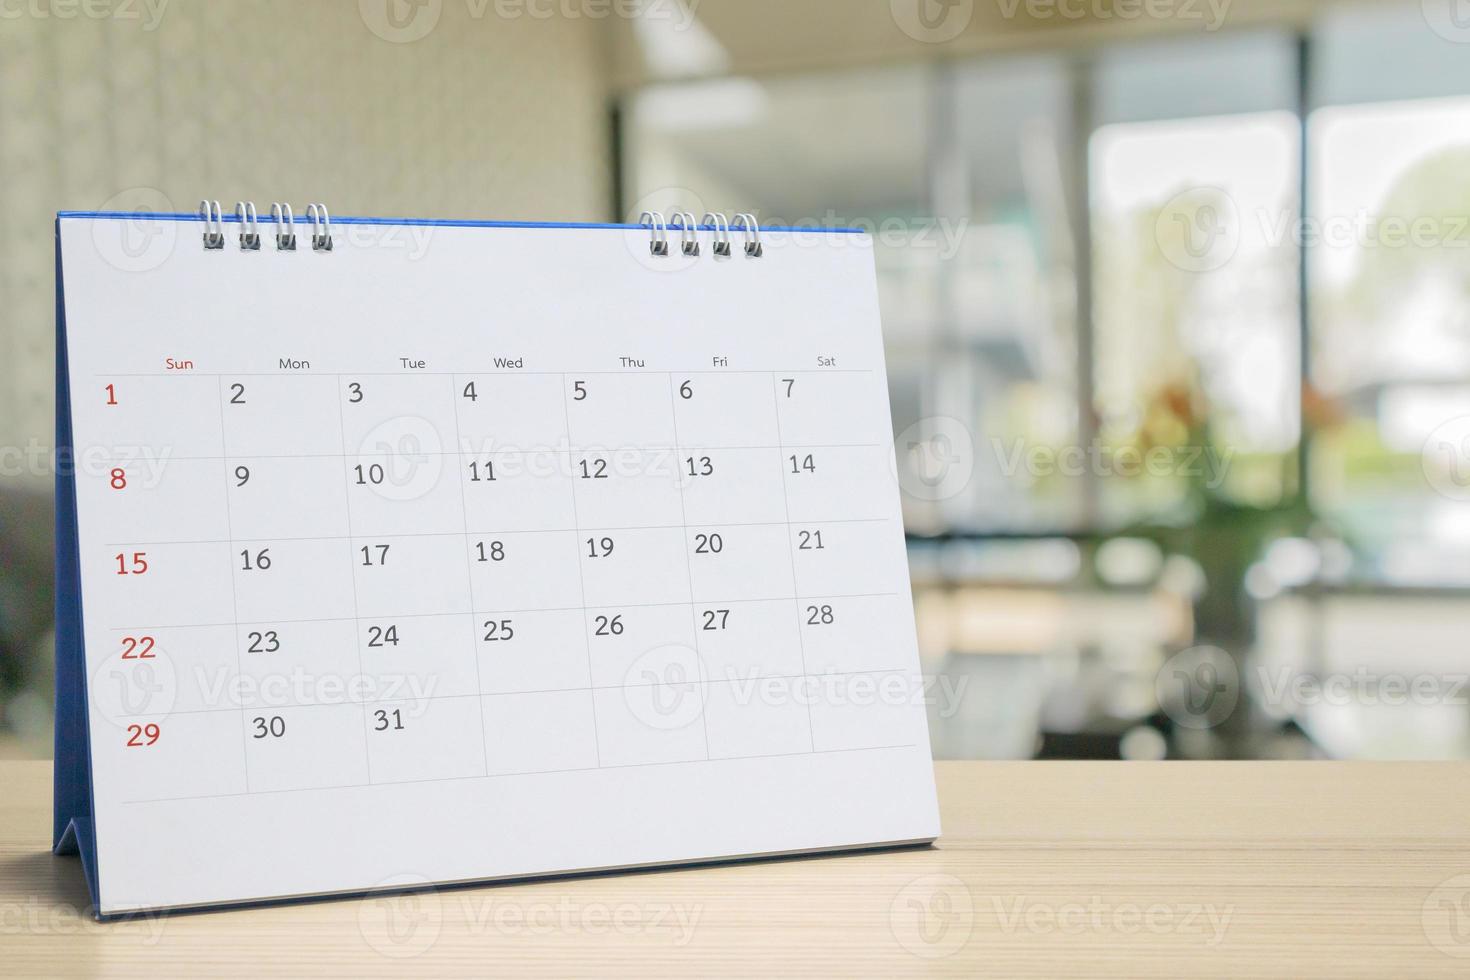 calendario de escritorio de papel blanco sobre una mesa de madera con una cita de fondo borrosa y concepto de reunión de negocios foto